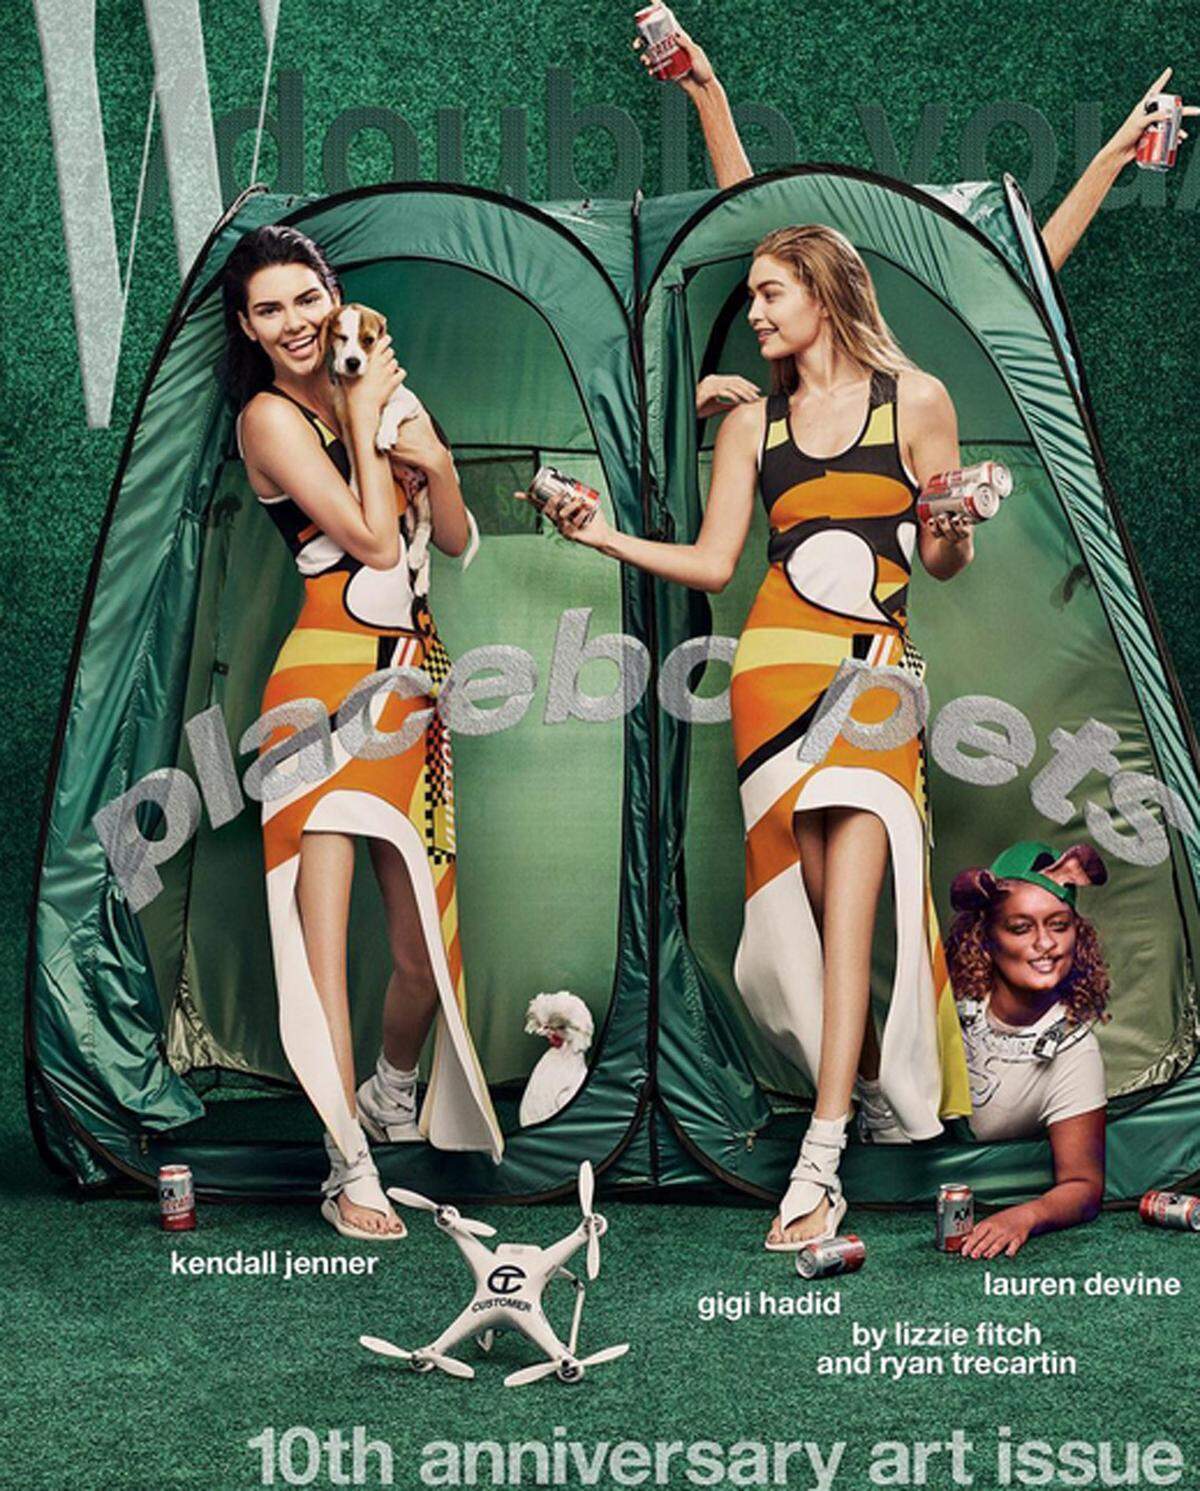 Zum 10. Jubiläum des W Magazins zeigen sich Kendall Jenner und Gigi Hadid in der "Art Issue" des "W Magazine" von ihrer fantasievollen Seite. Trotzdem fällt sofort auf, dass bei der Nachbearbeitung ein größerer Patzer passiert ist: Beide Models haben keine Kniescheiben.